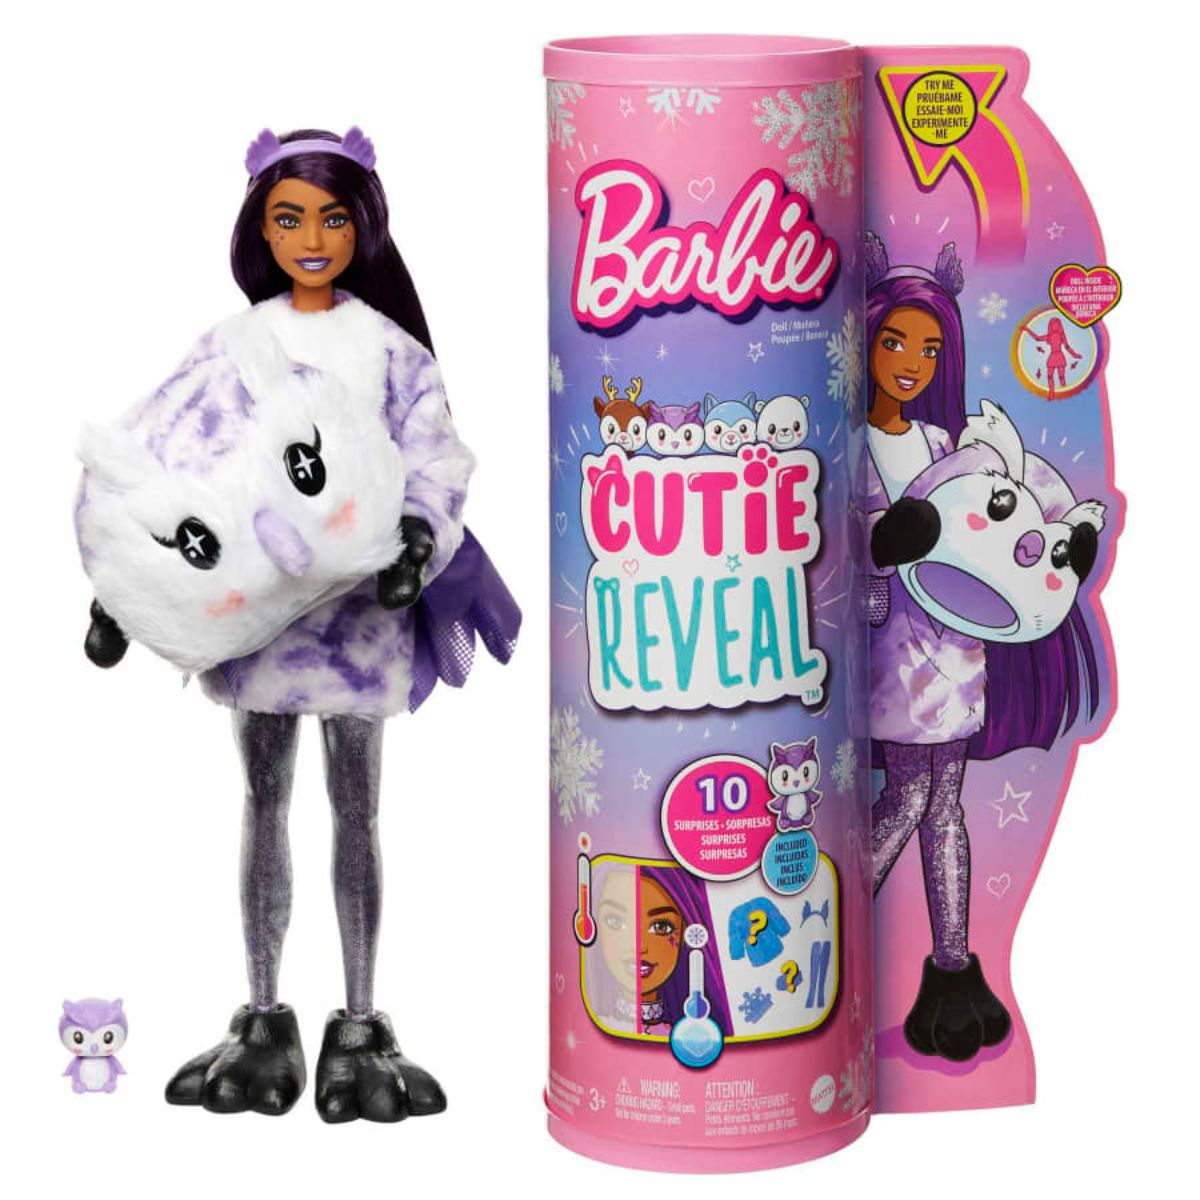  Papusa Barbie Cutie Reveal, Bufnita, cu 10 surprize